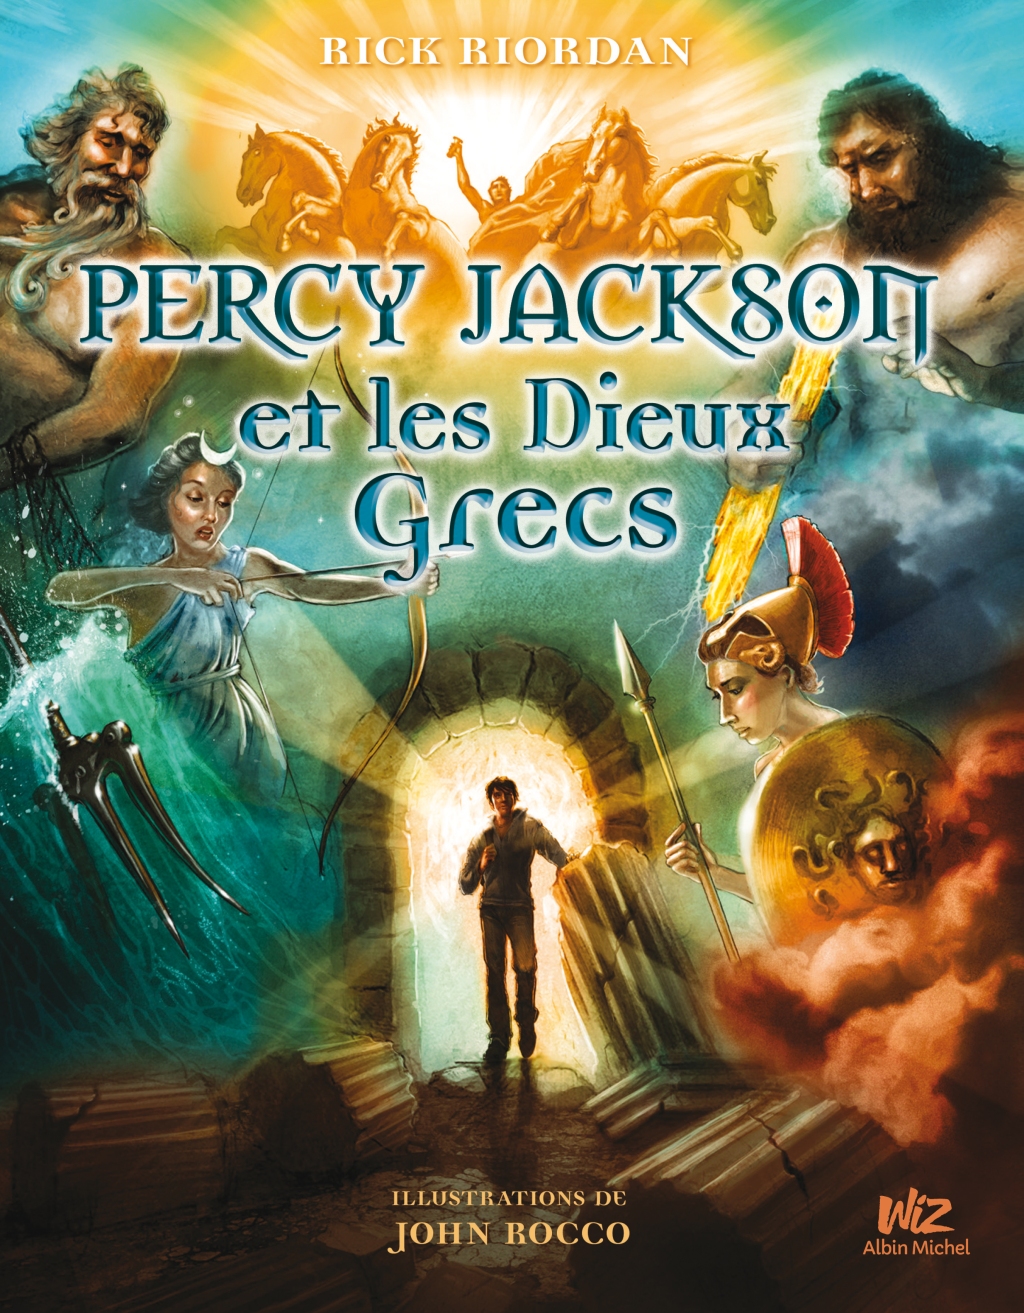 Percy Jackson et les dieux grecs (Rick Riordan) : il raconte les histoires des dieux olympiens